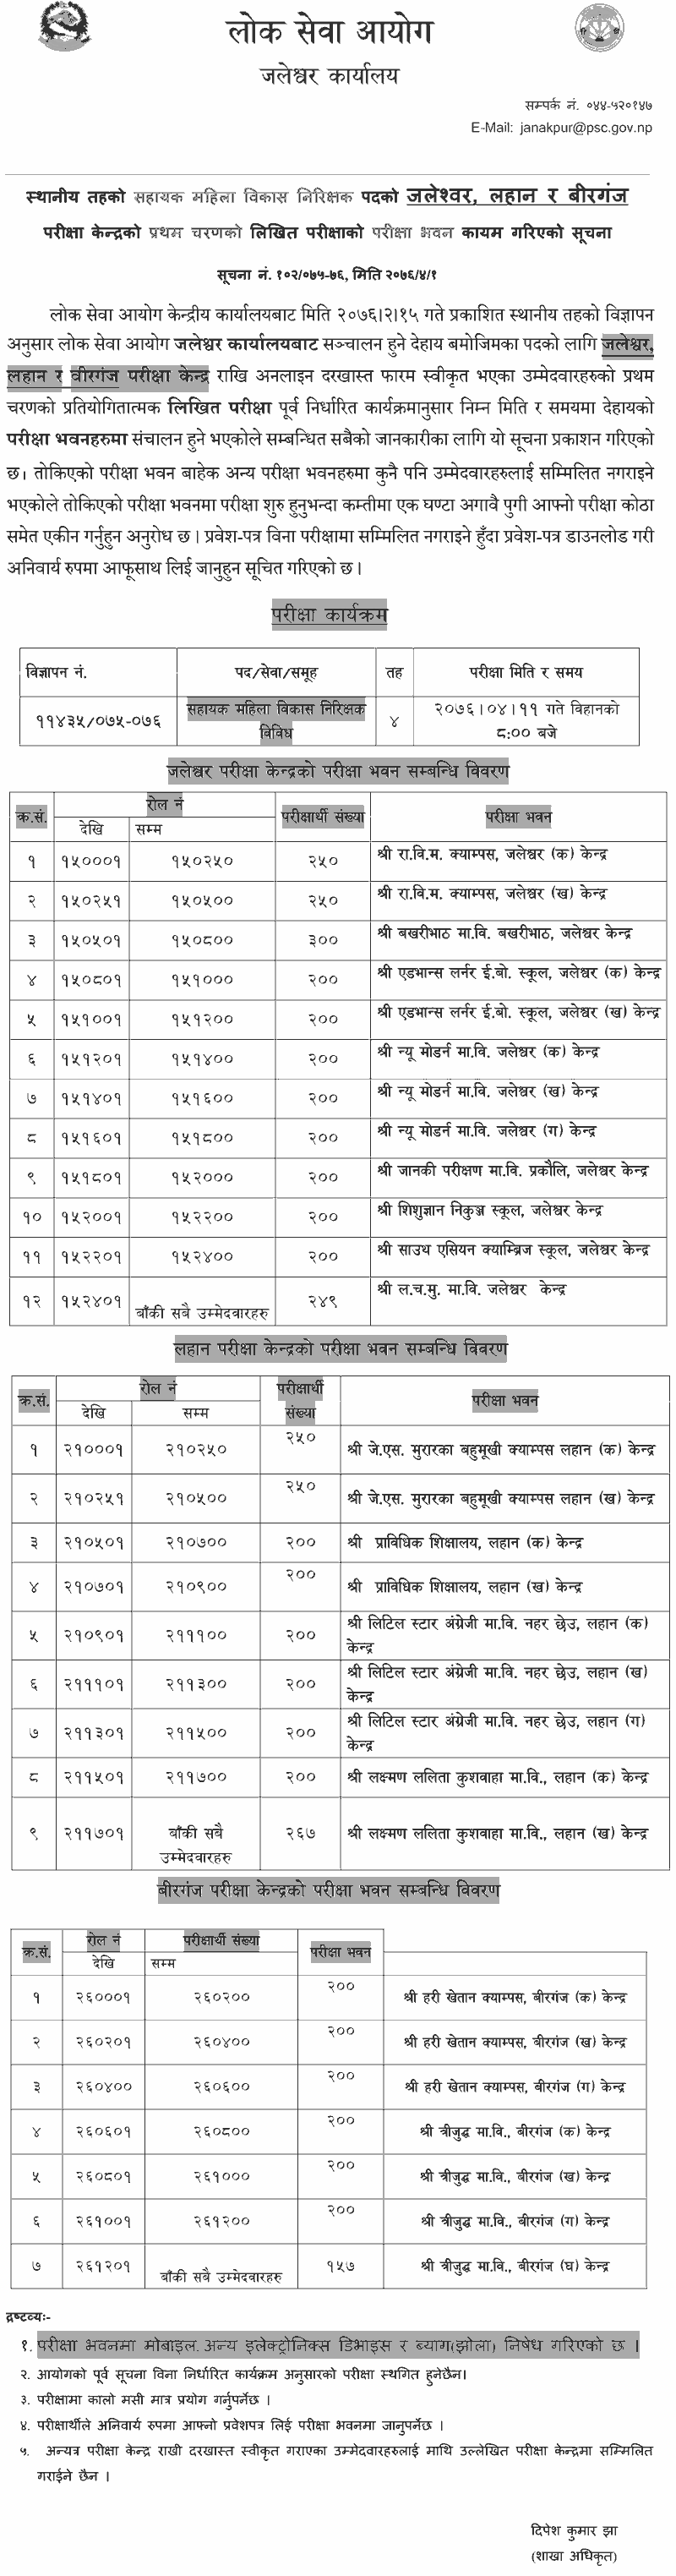 Local Level Sahayak Mahila Bikas Nirikshak Exam Center - Jaleshwor